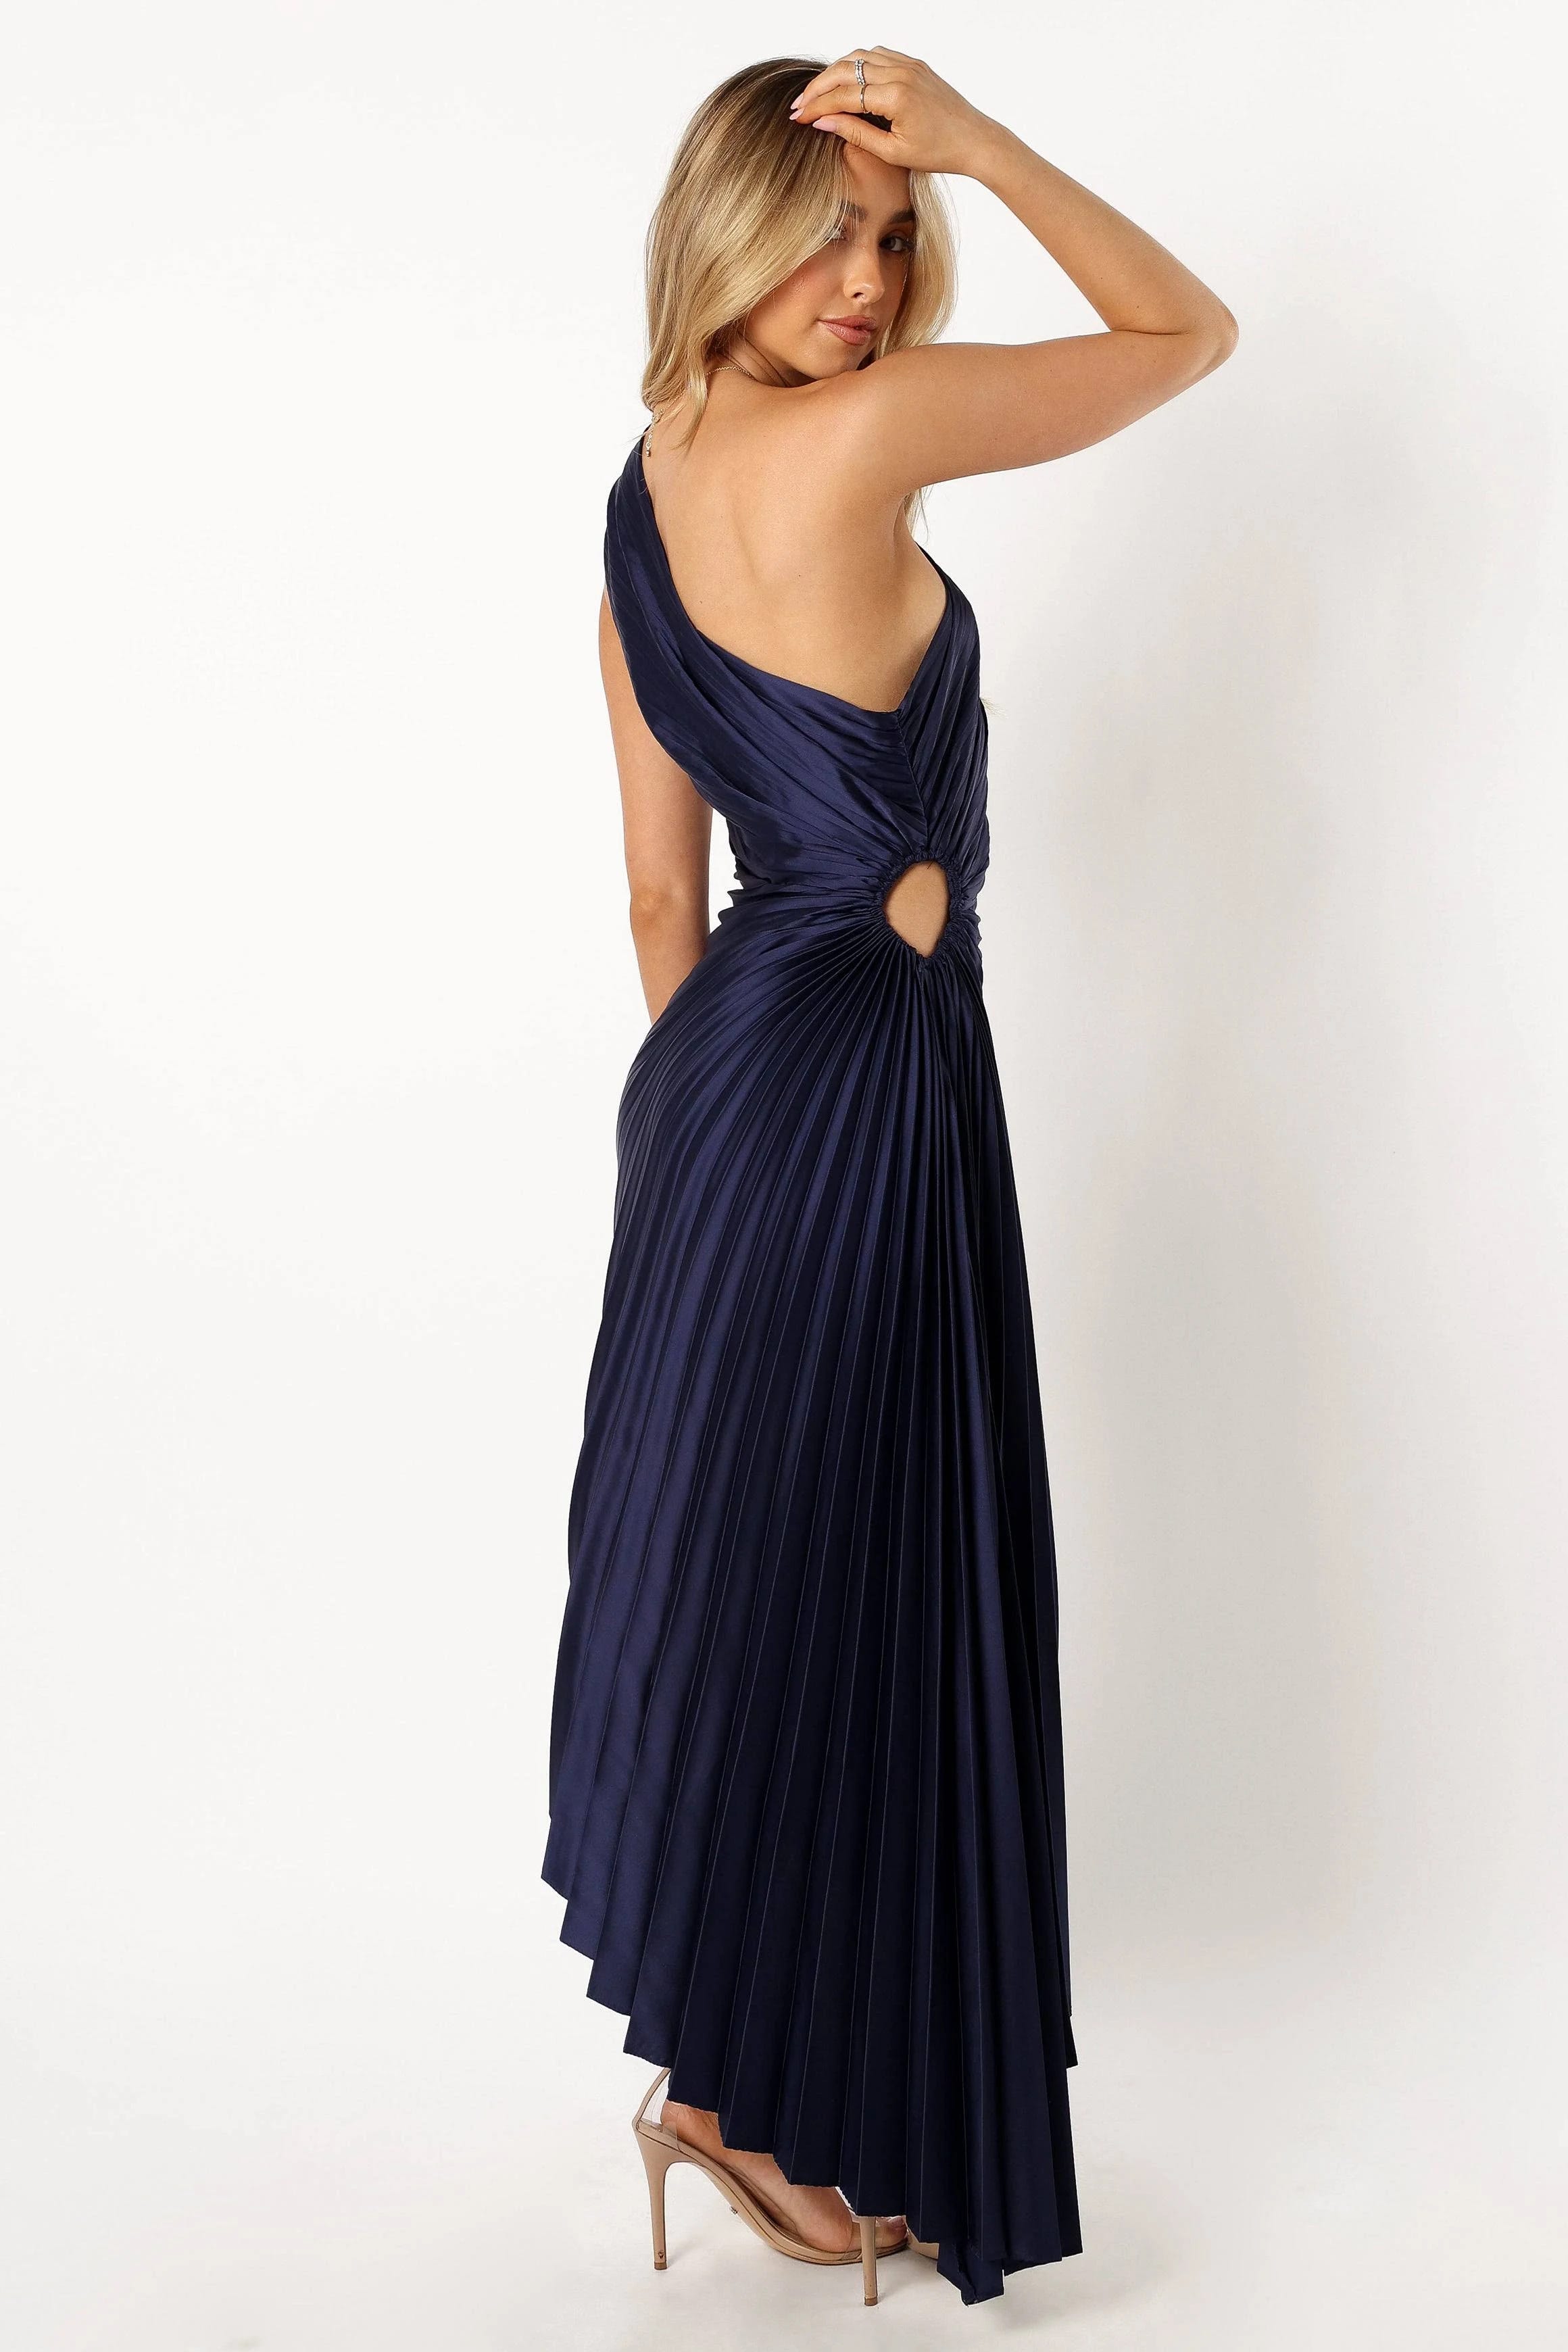 Stylish Pleated One-Shoulder Navy Maxi Dress | Image